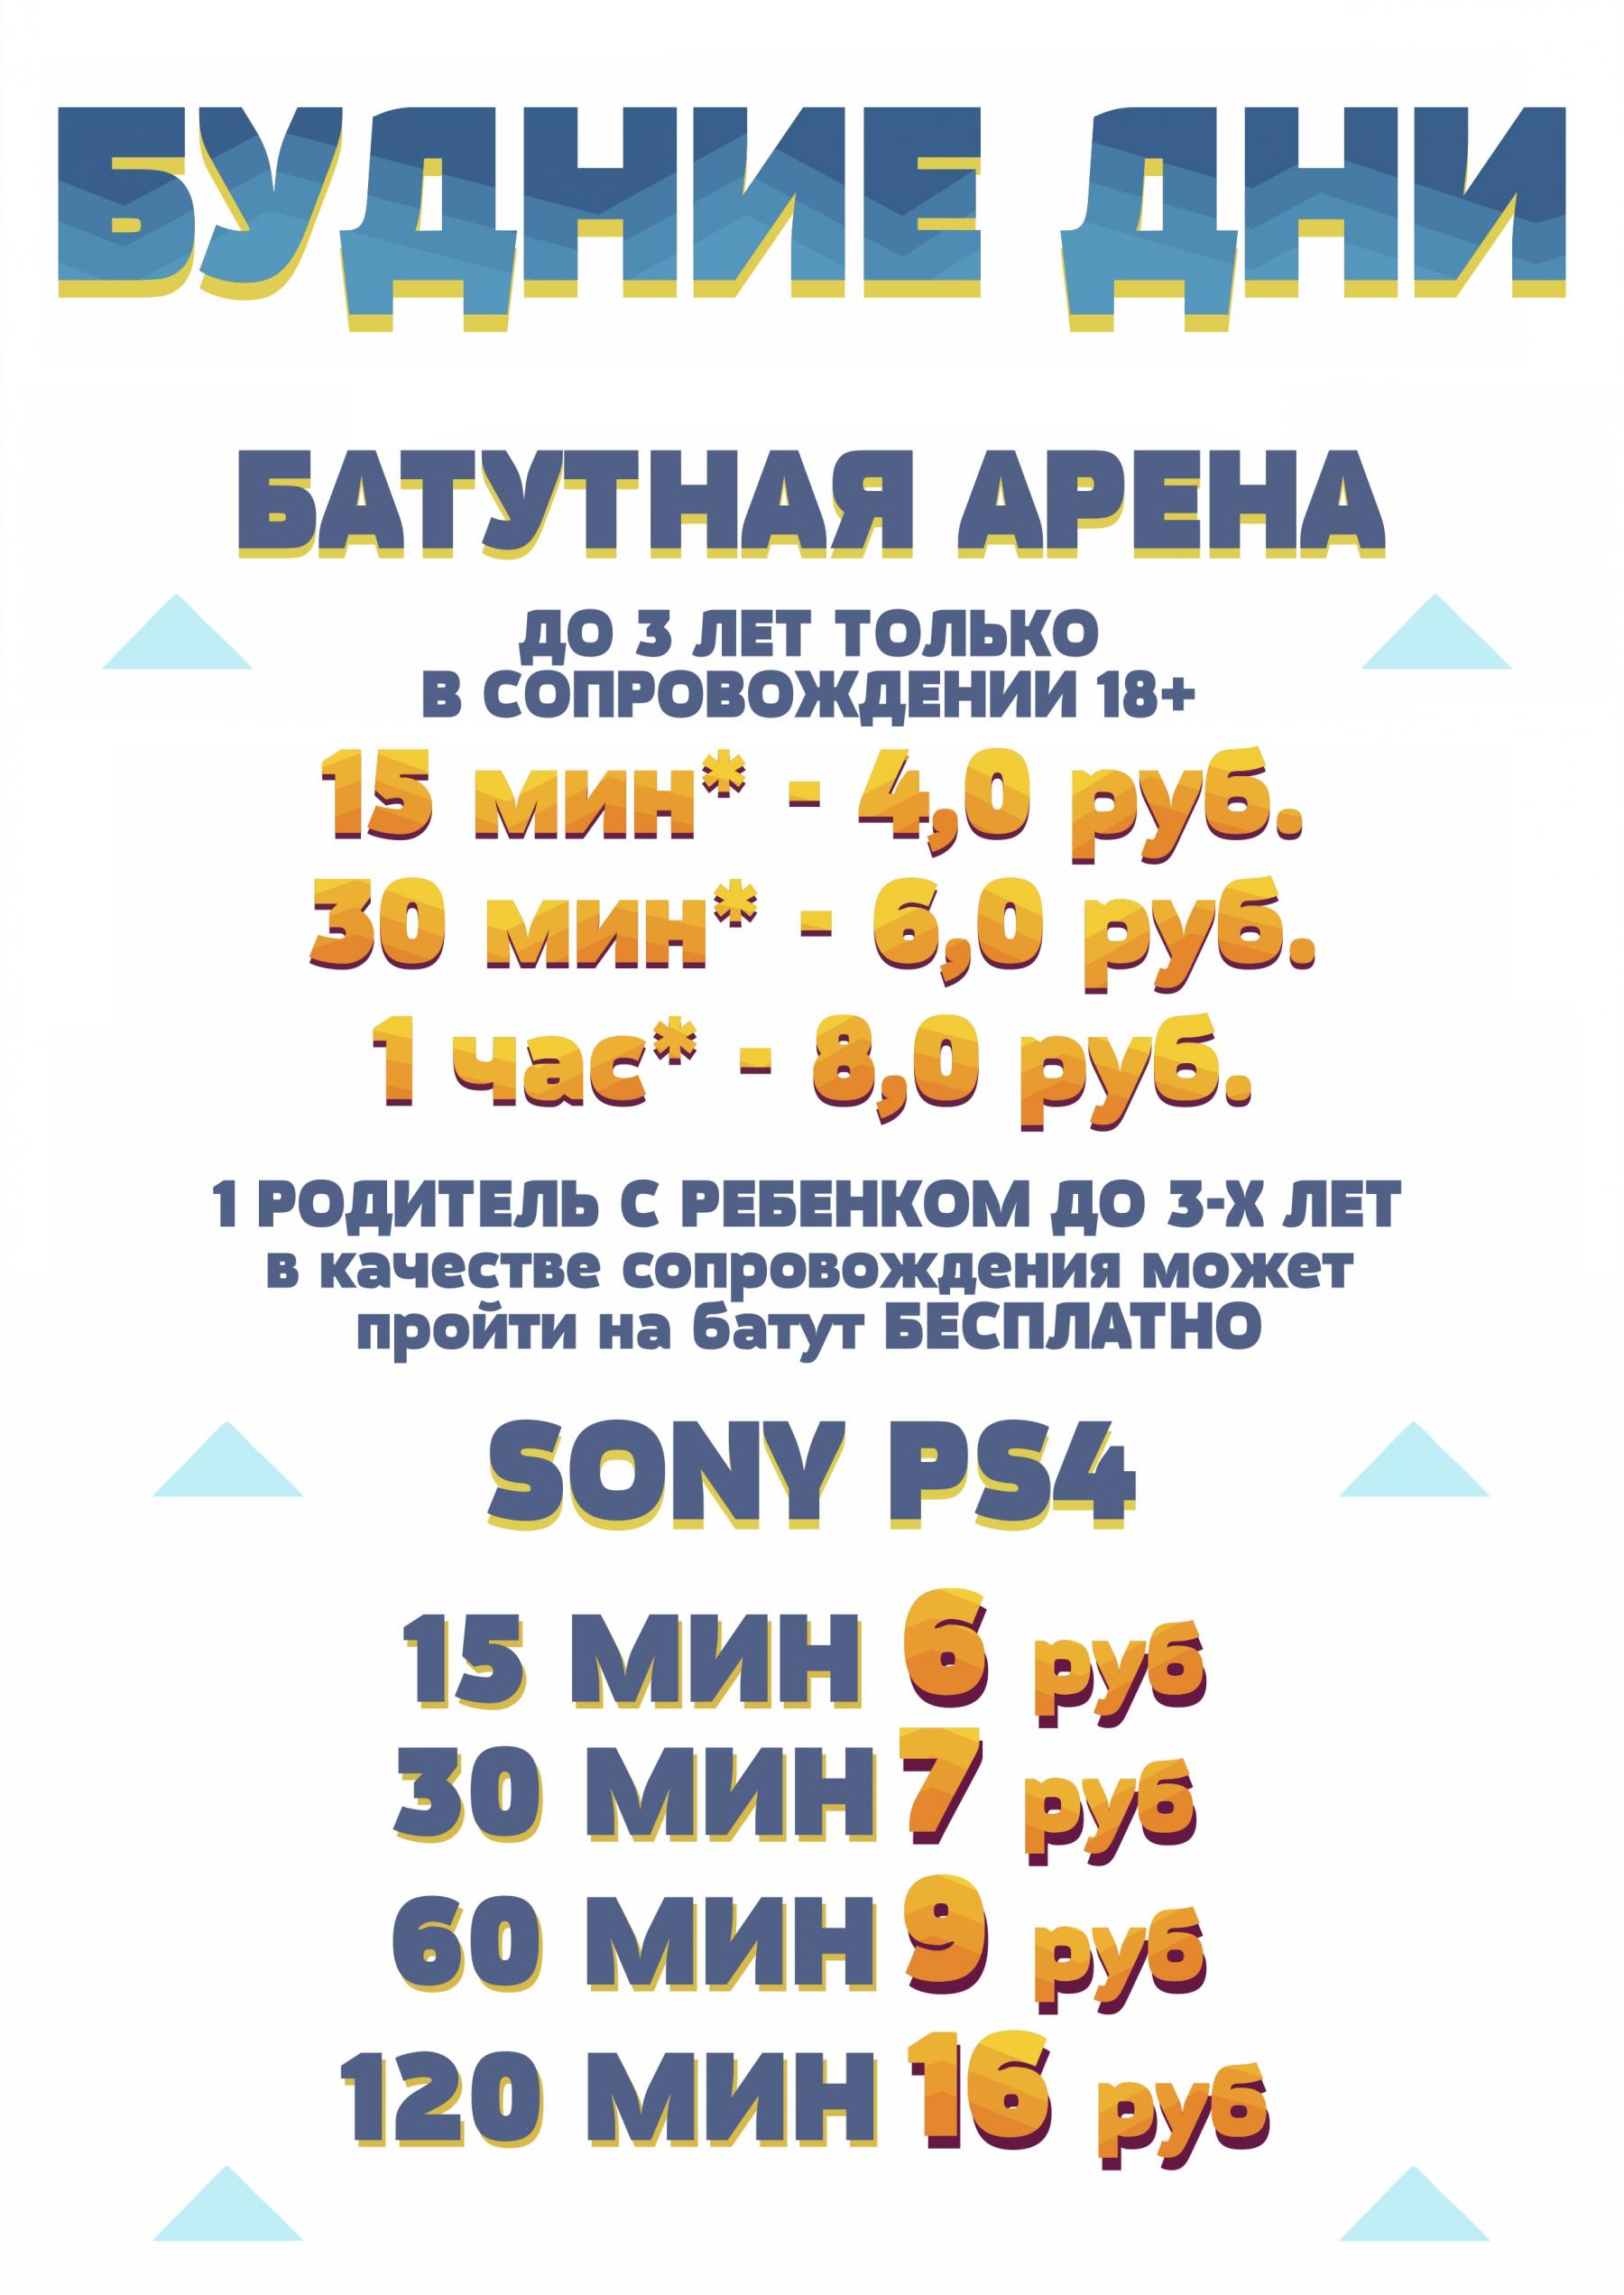 Прайс цен на батутную арену в Минске в будние дни